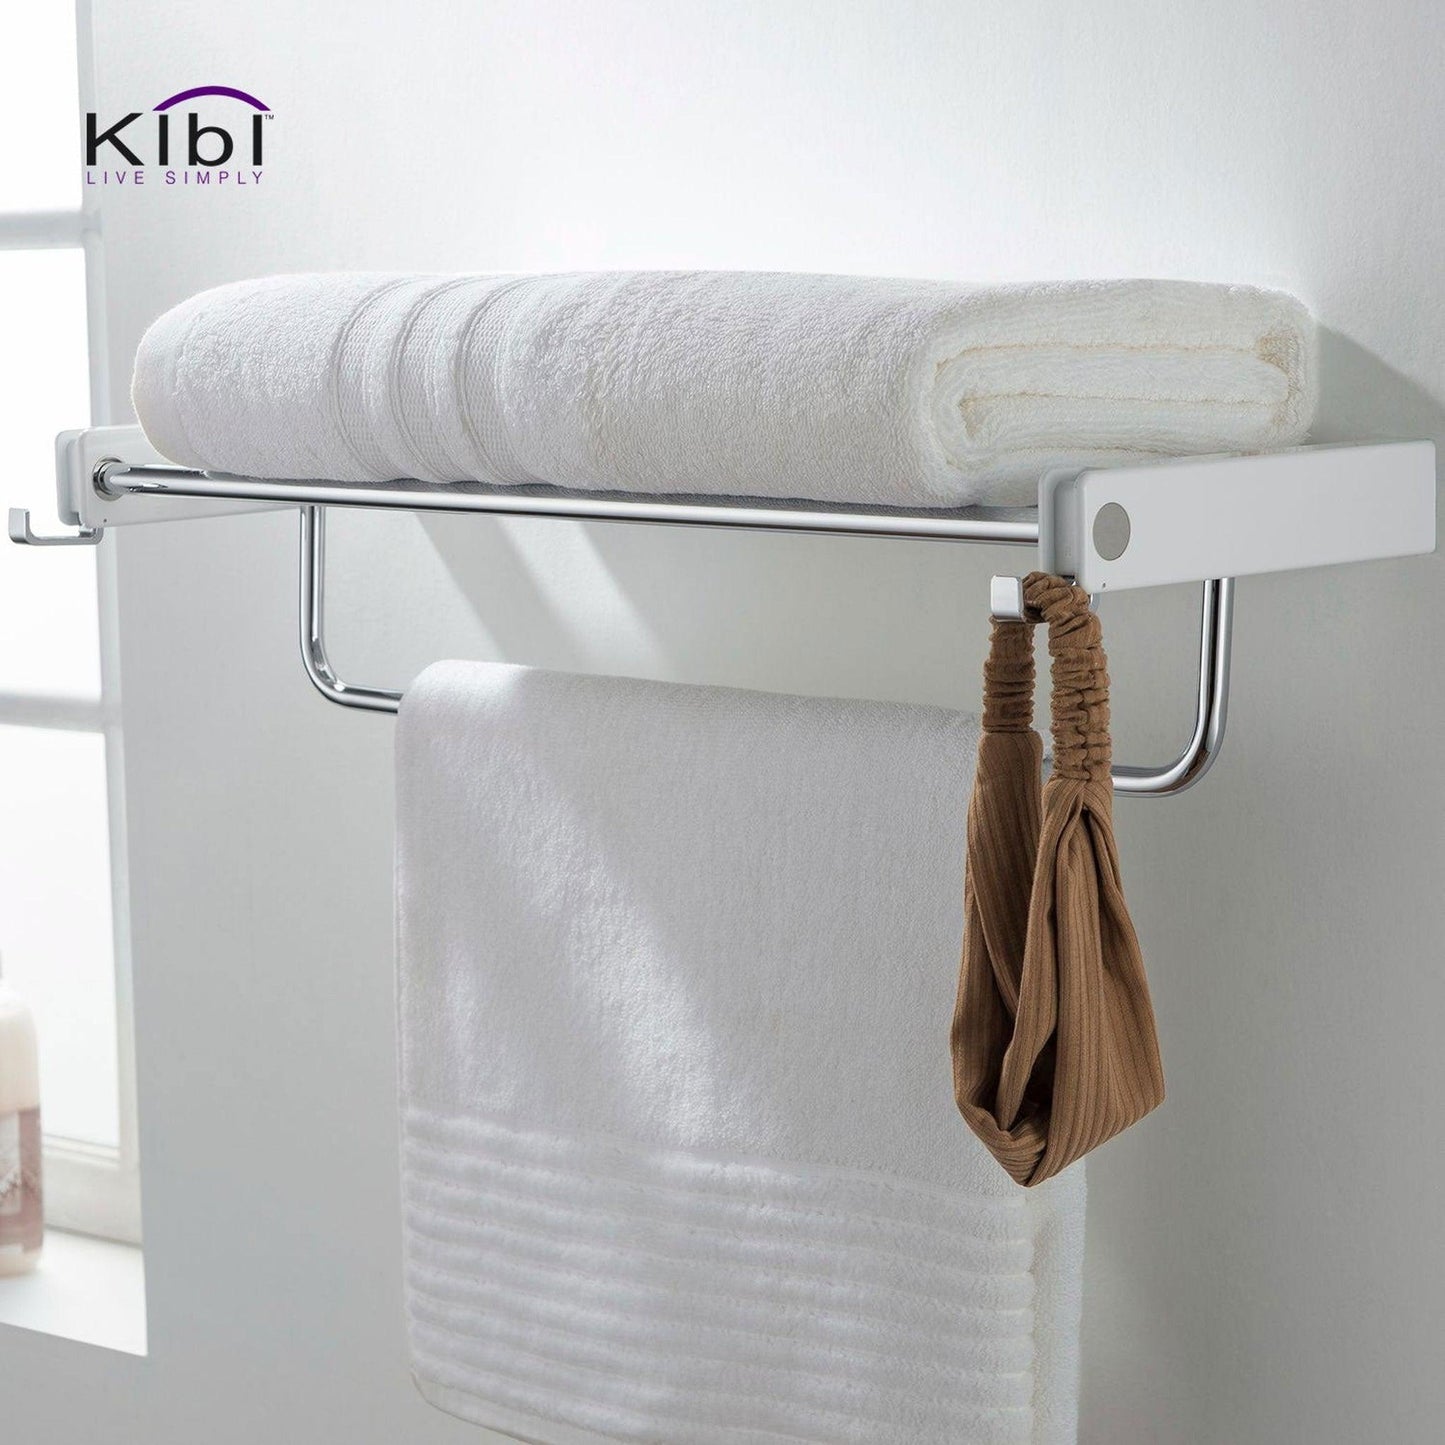 KIBI Artis Towel Rack With Hook in Chrome White Finish